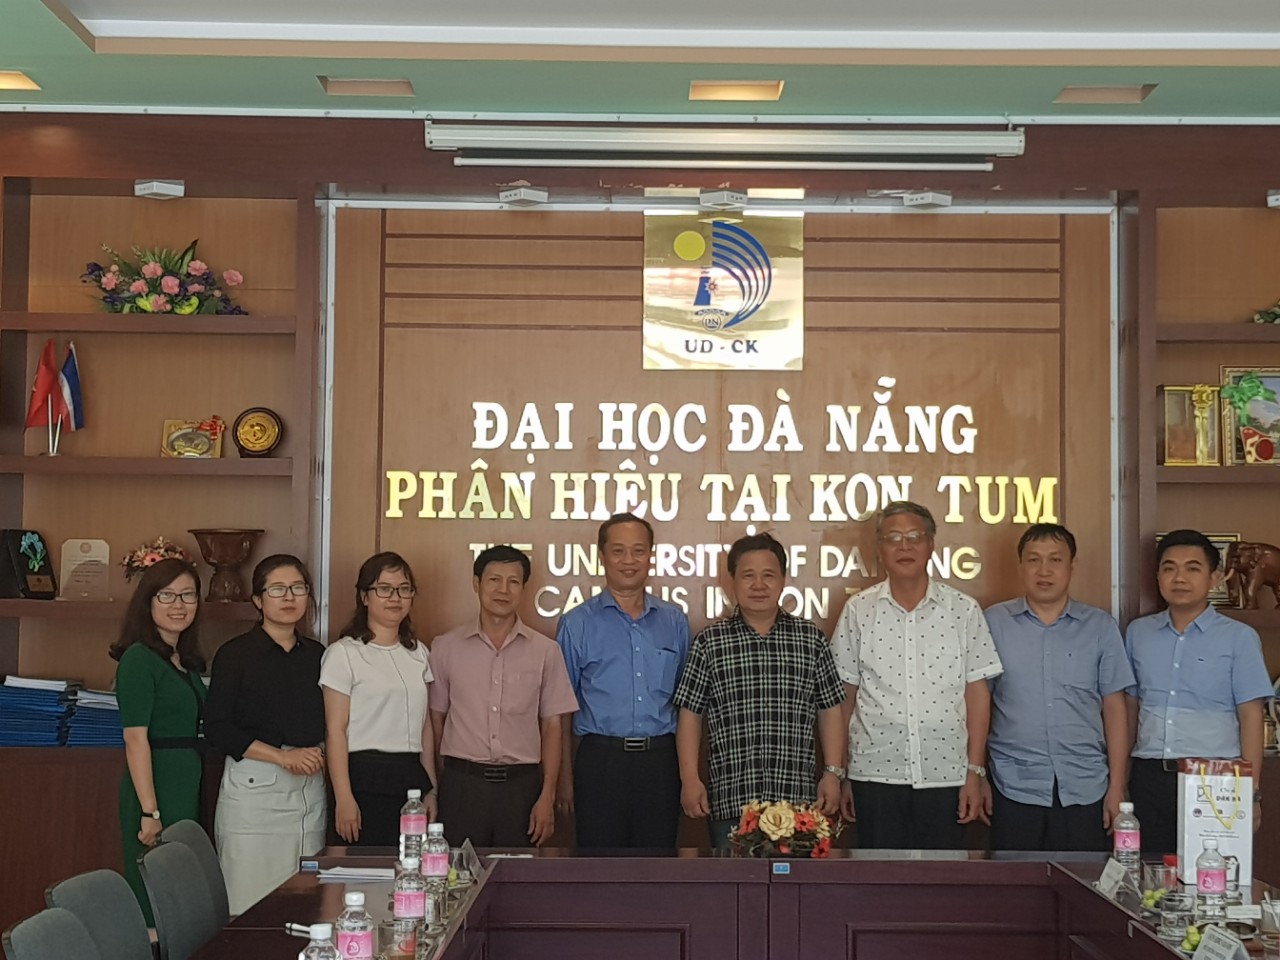 Họp về kế hoạch đồng tổ chức hội thảo khoa học quốc tế với chủ đề: “Thương mại và phân phối” với Phân hiệu Đại học Đà Nẵng tại Kon Tum